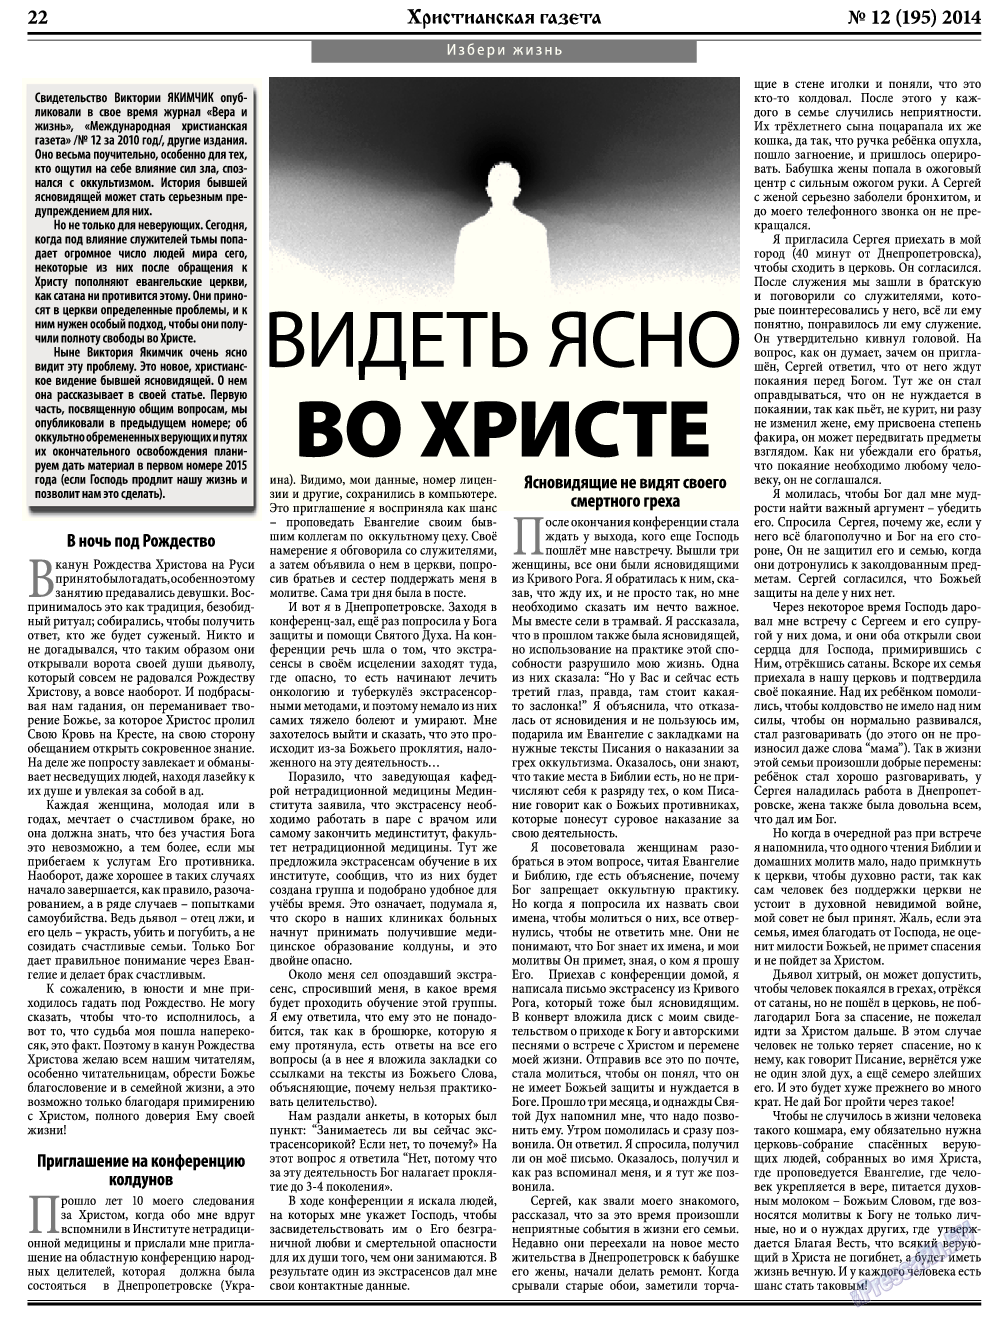 Христианская газета, газета. 2014 №12 стр.30